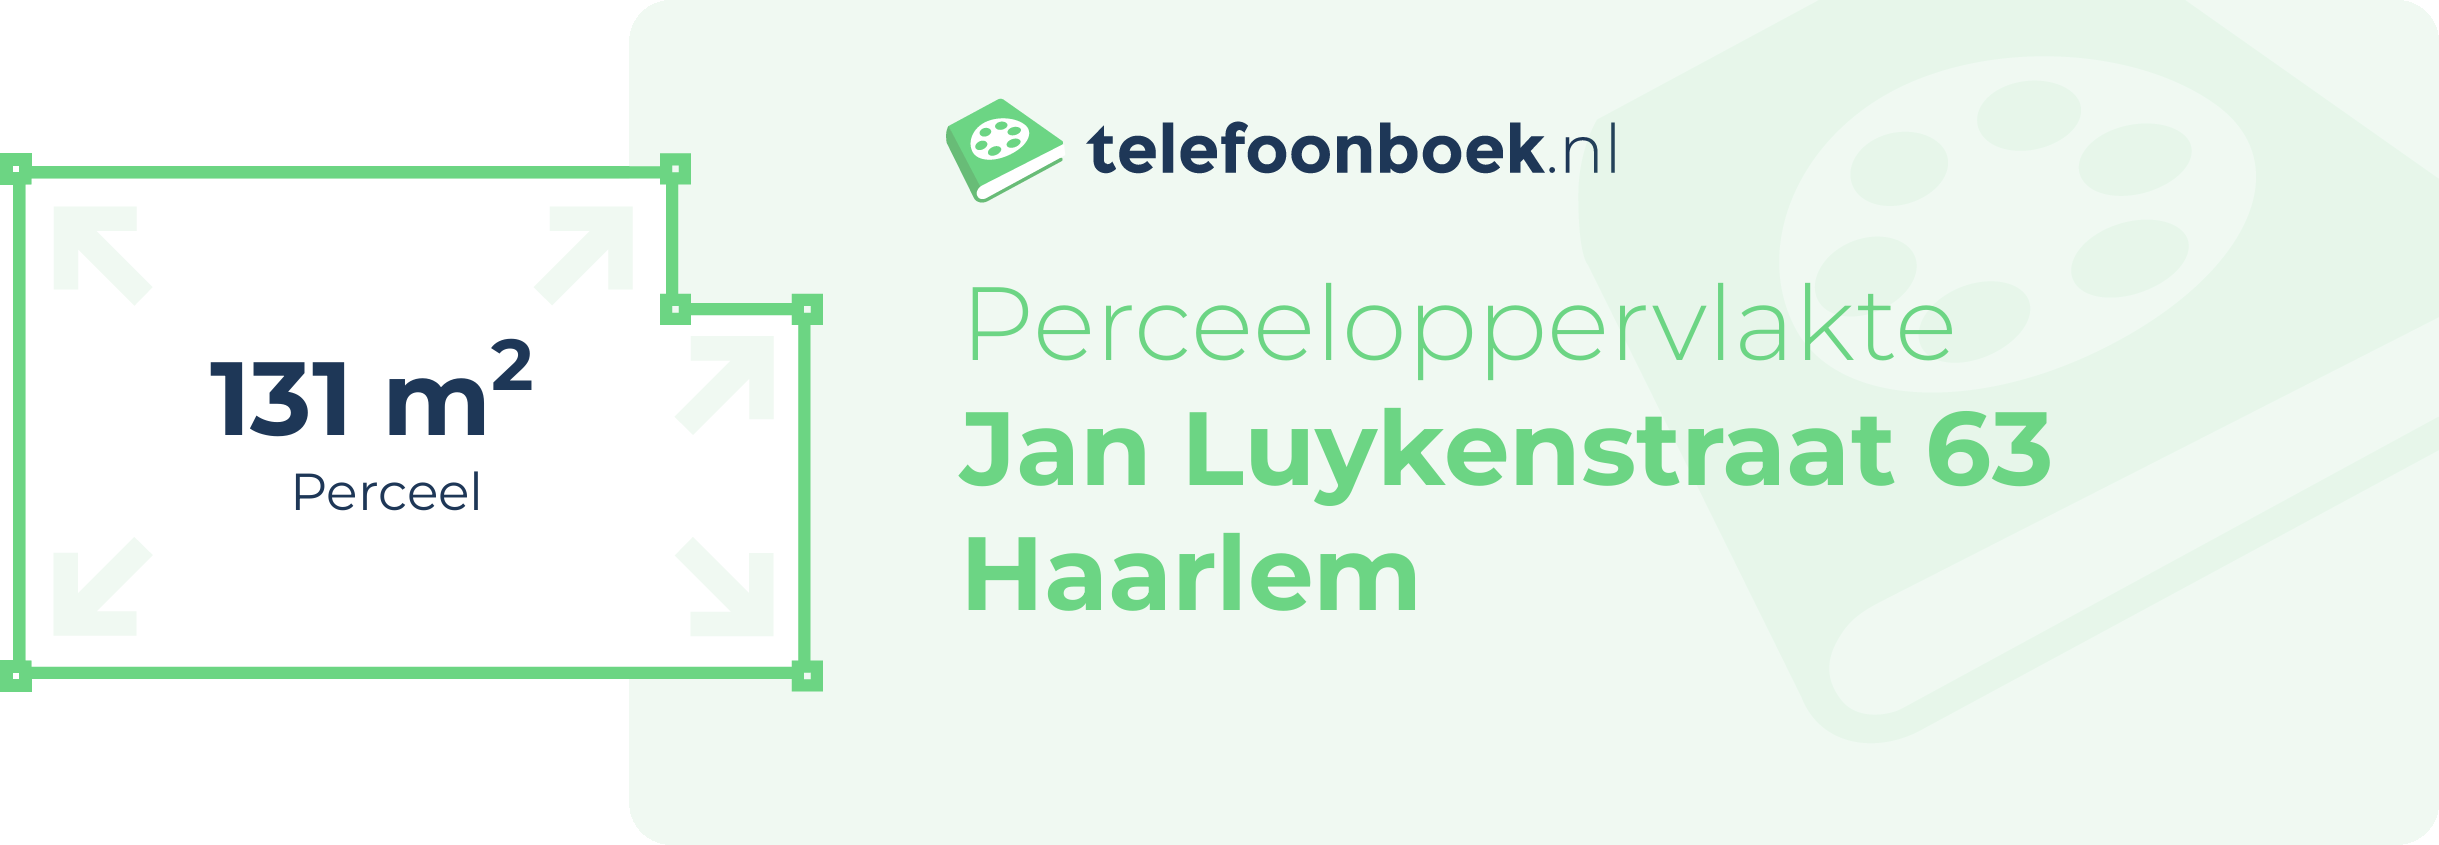 Perceeloppervlakte Jan Luykenstraat 63 Haarlem